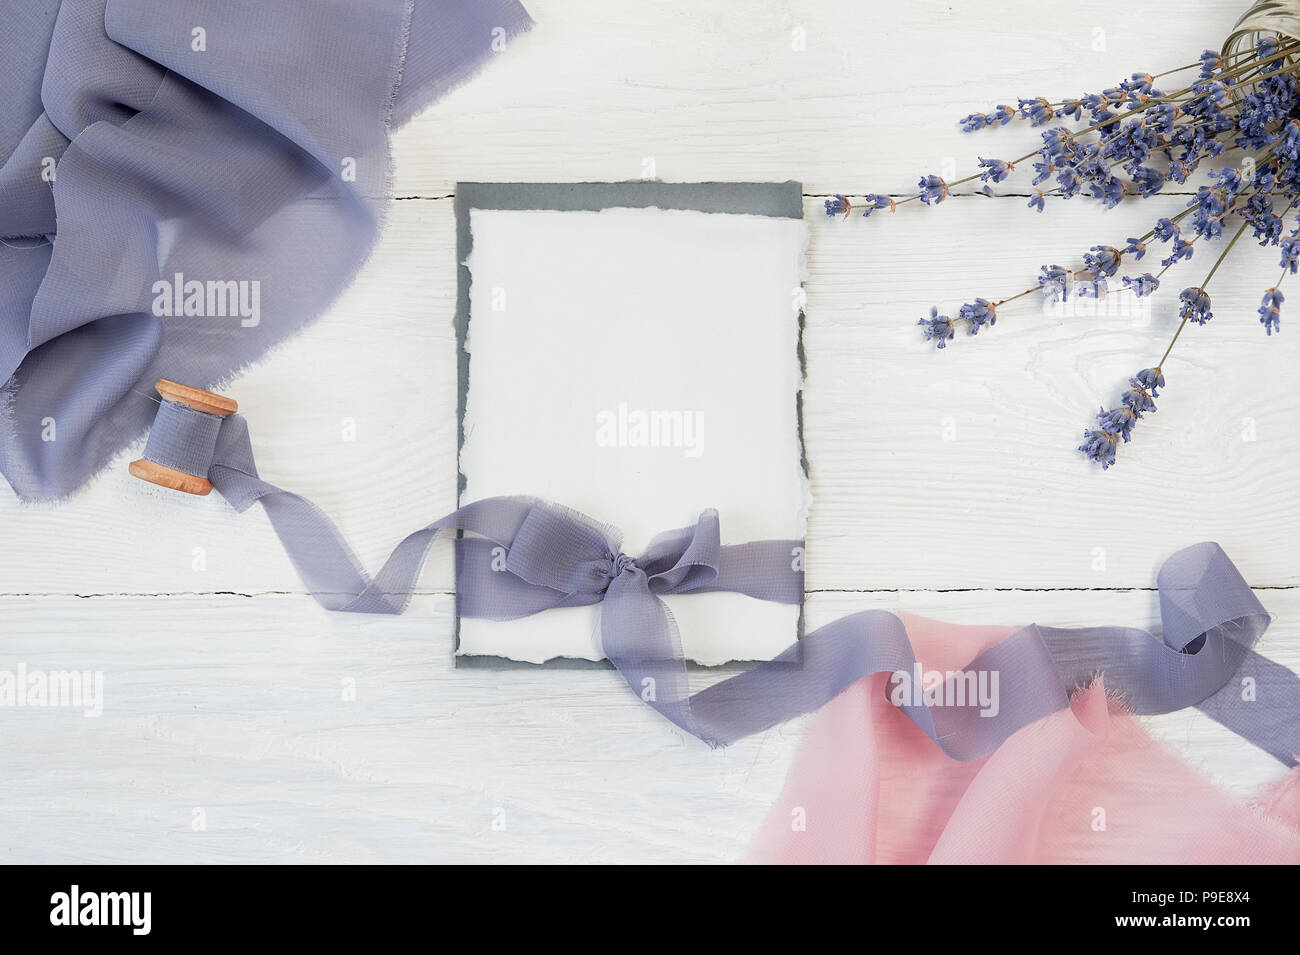 Carte vierge blanc ribbon bow sur fond de tissu bleu et rose avec des fleurs de lavande sur un fond blanc. Immersive avec enveloppe et carte vierge. Mise à plat. Vue d'en haut Banque D'Images